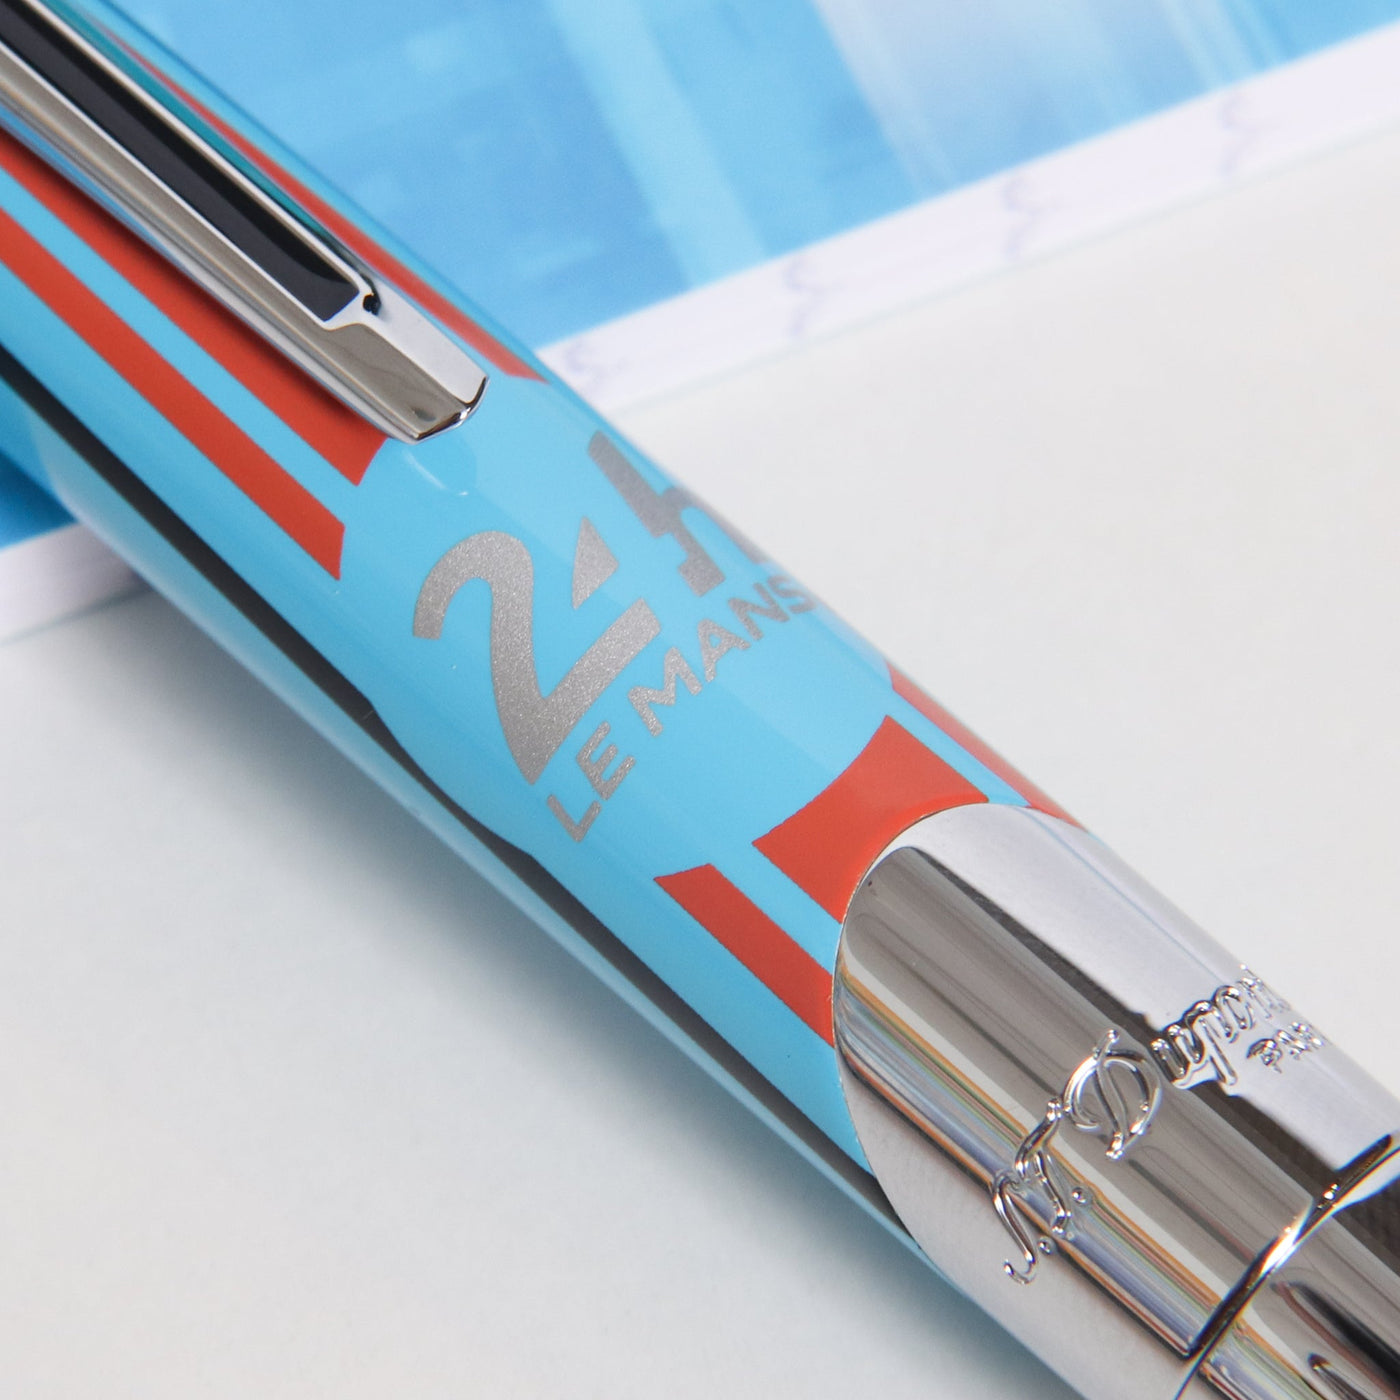 ST Dupont Defi Millenium Le Mans Blue Ballpoint Pen Details